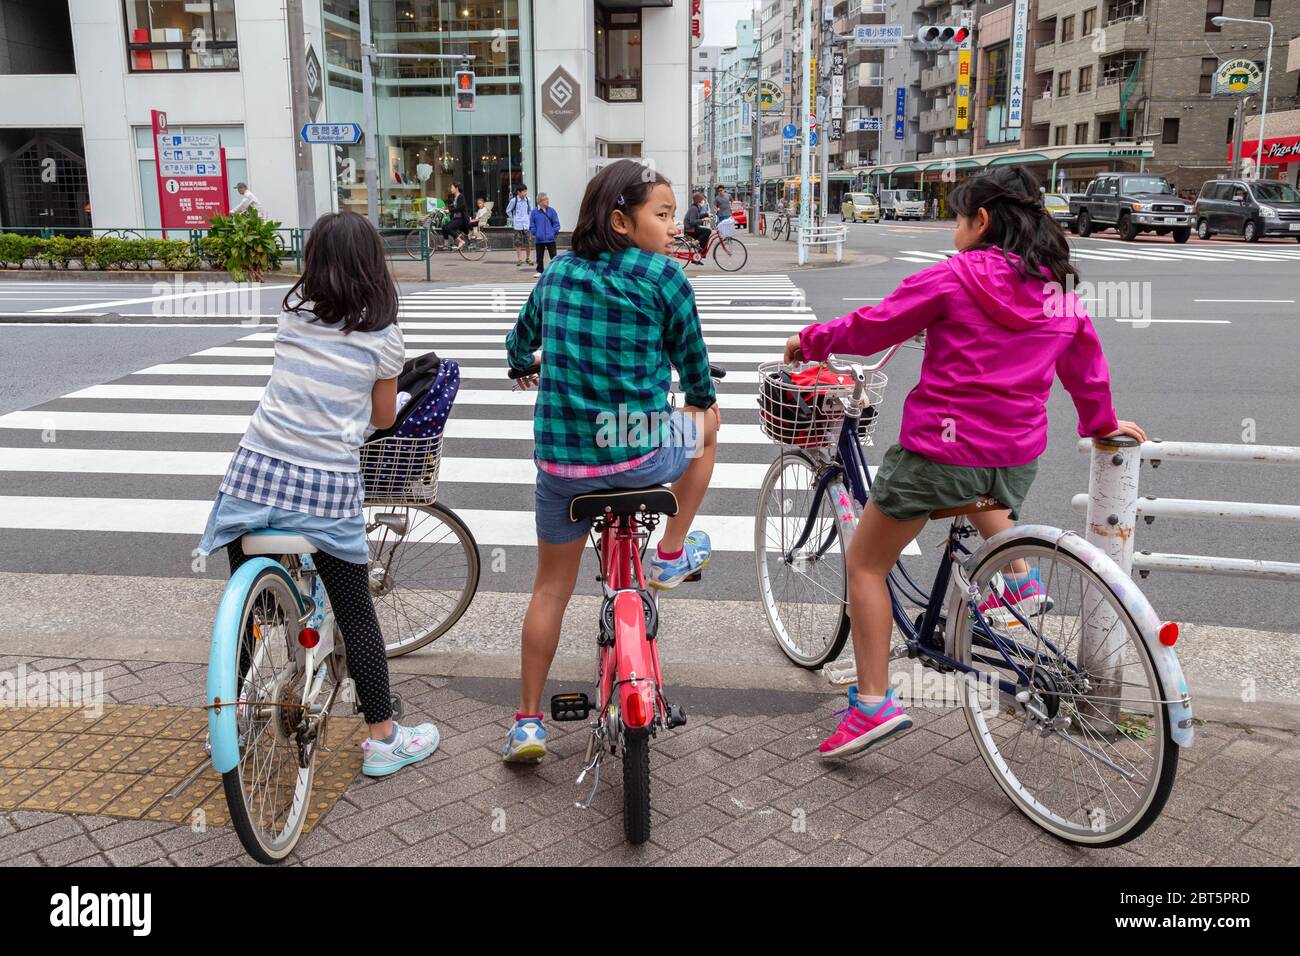 Tokyo, Japon - 20 avril 2020 : trois jeunes filles japonaises sont à vélo et s'arrêtent sur le passage piéton au feu avant de traverser Banque D'Images